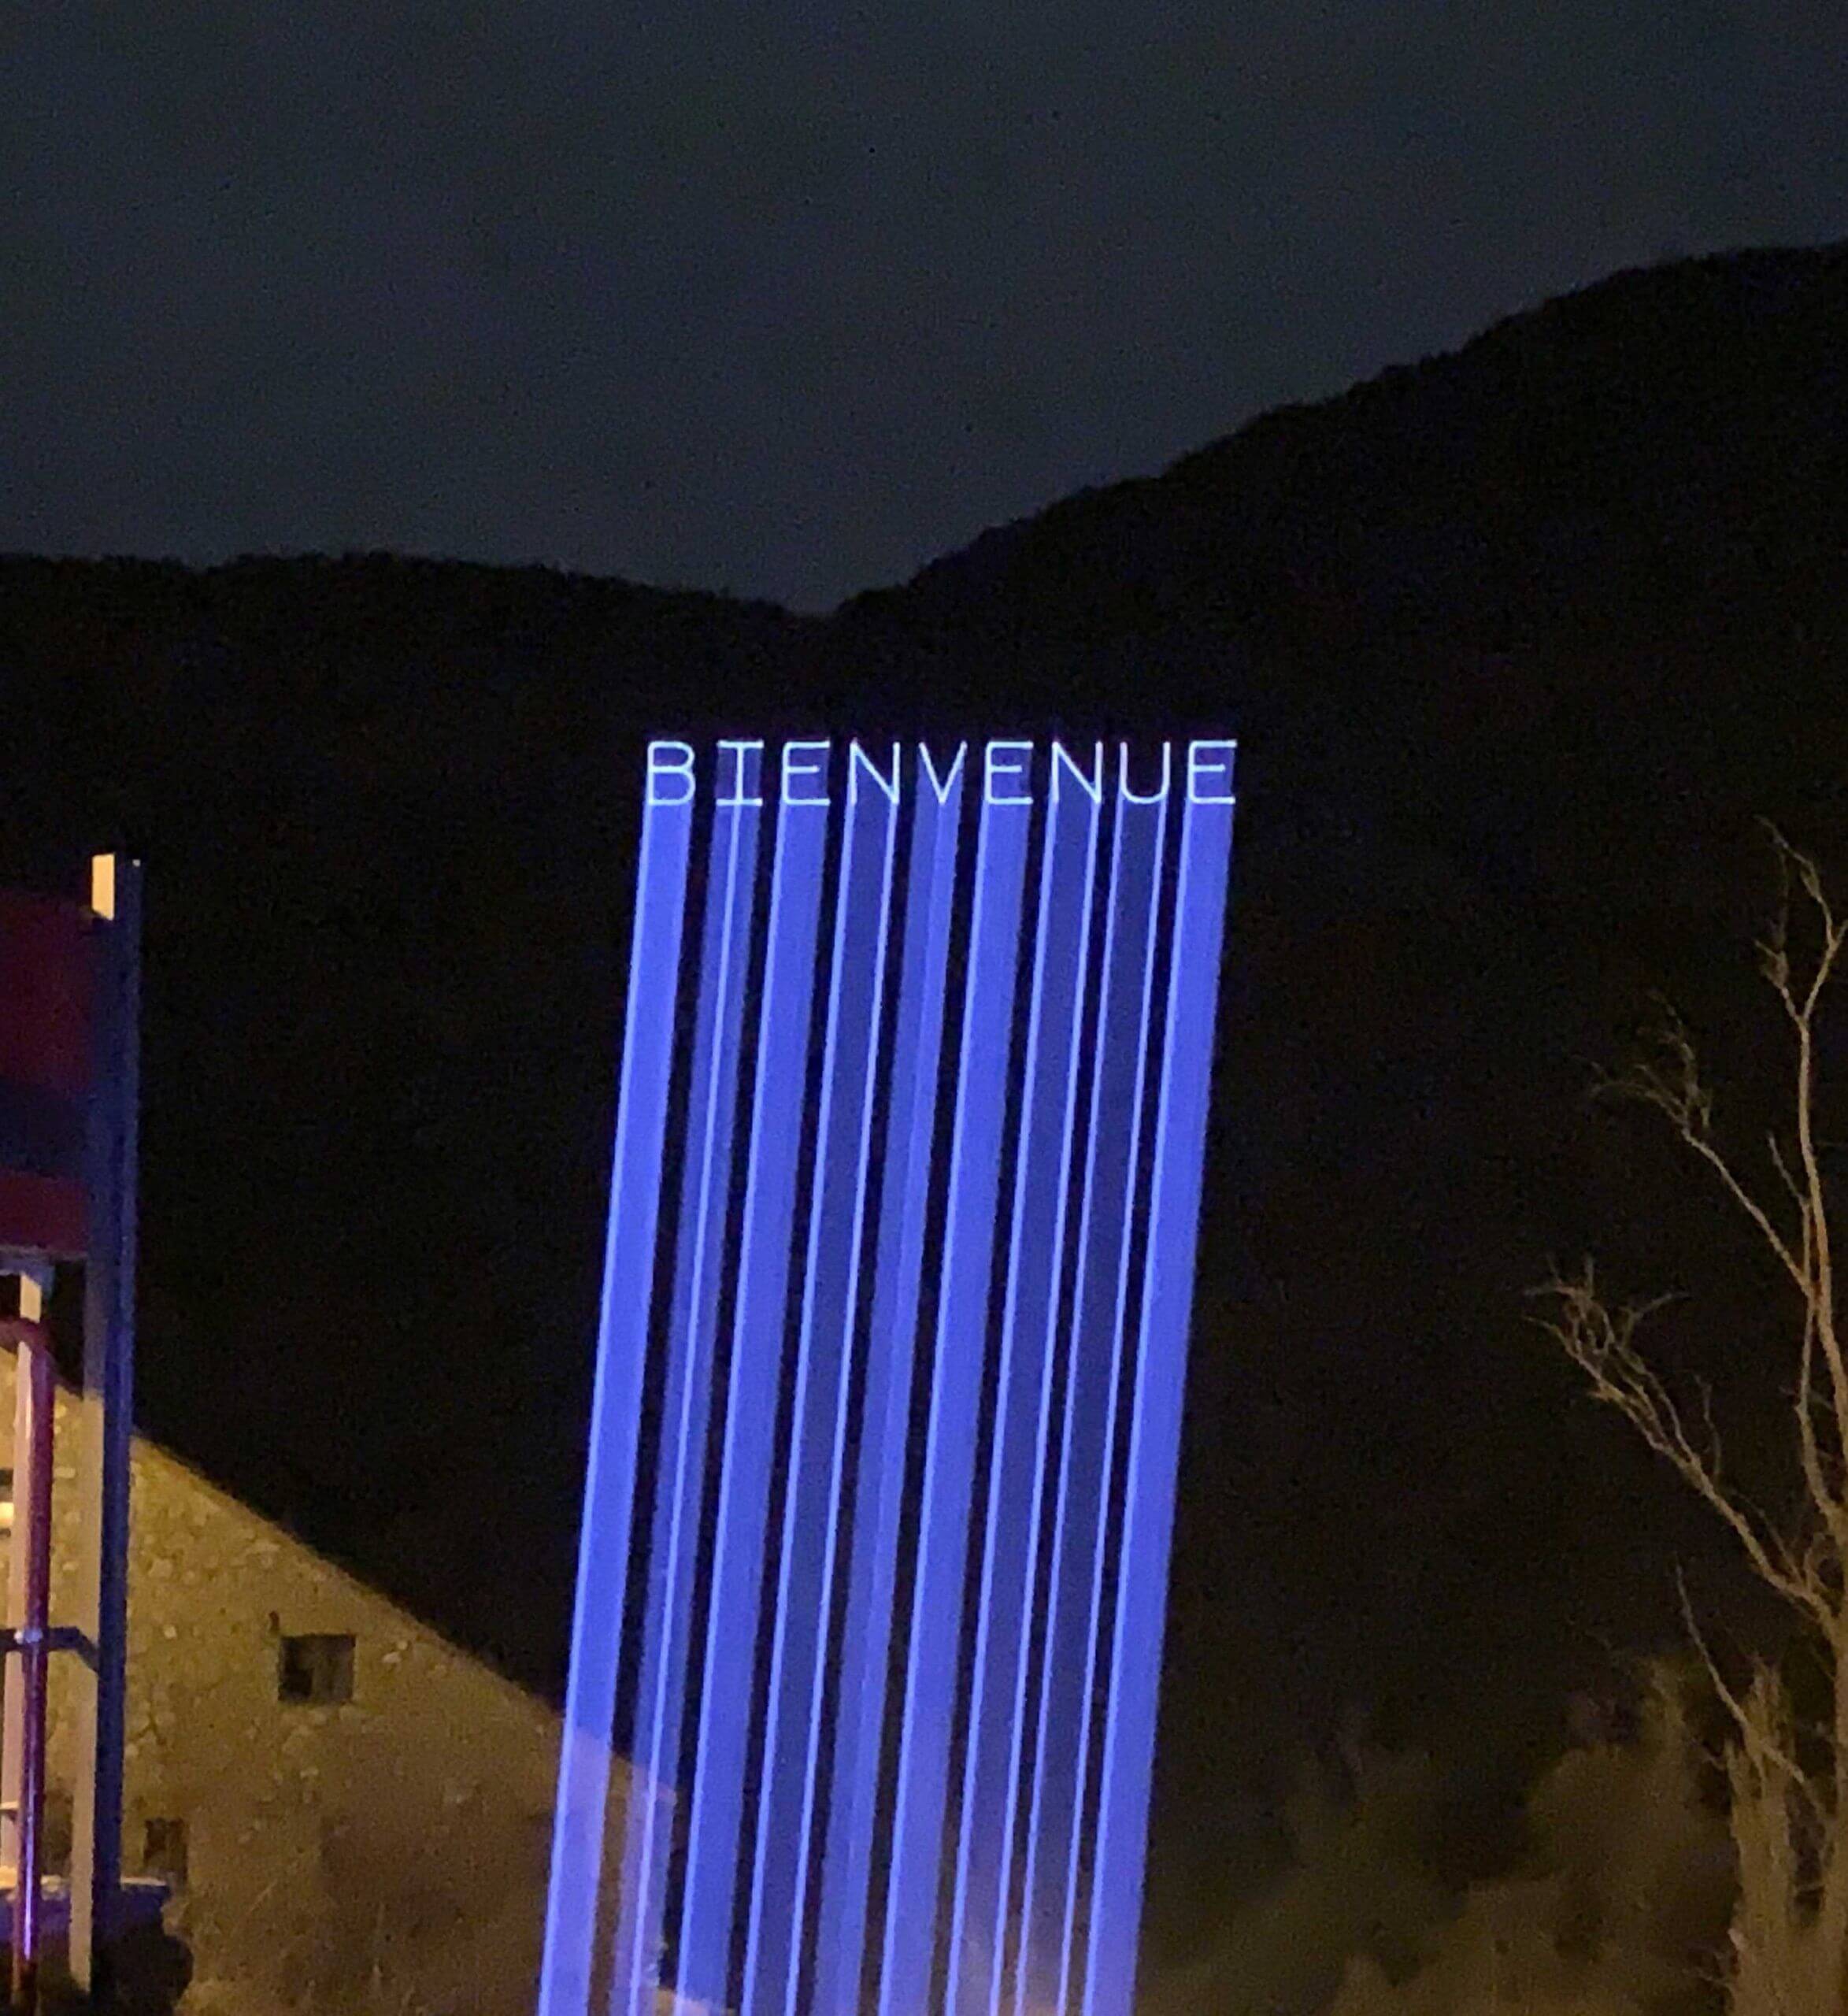 Europe Évènement - Photo d'une projection de texte disant Bienvenue en bleu sur une montagne